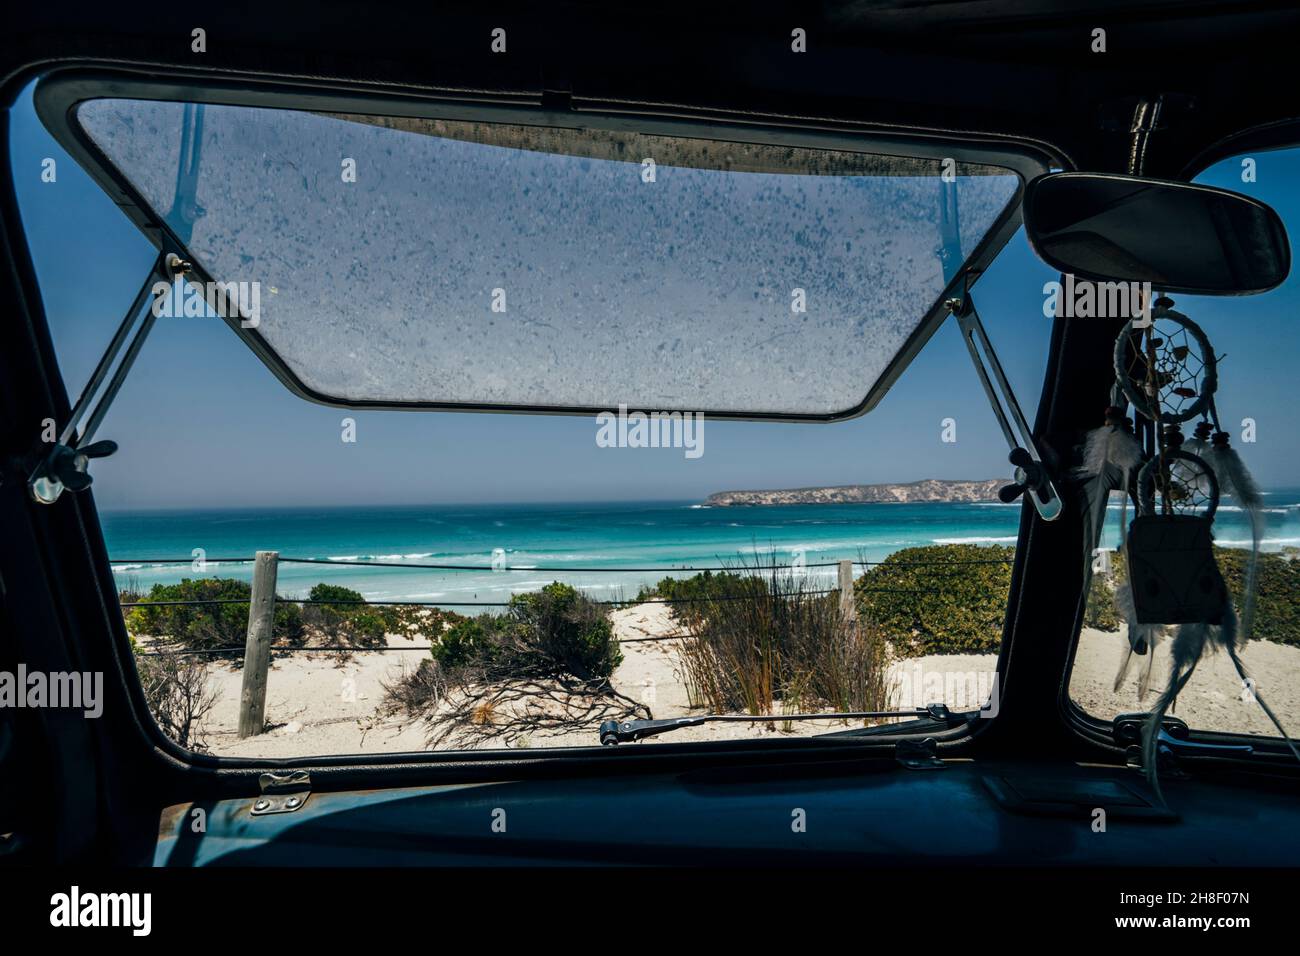 Ventana de autobús abierta al soleado paisaje idílico del mar Foto de stock